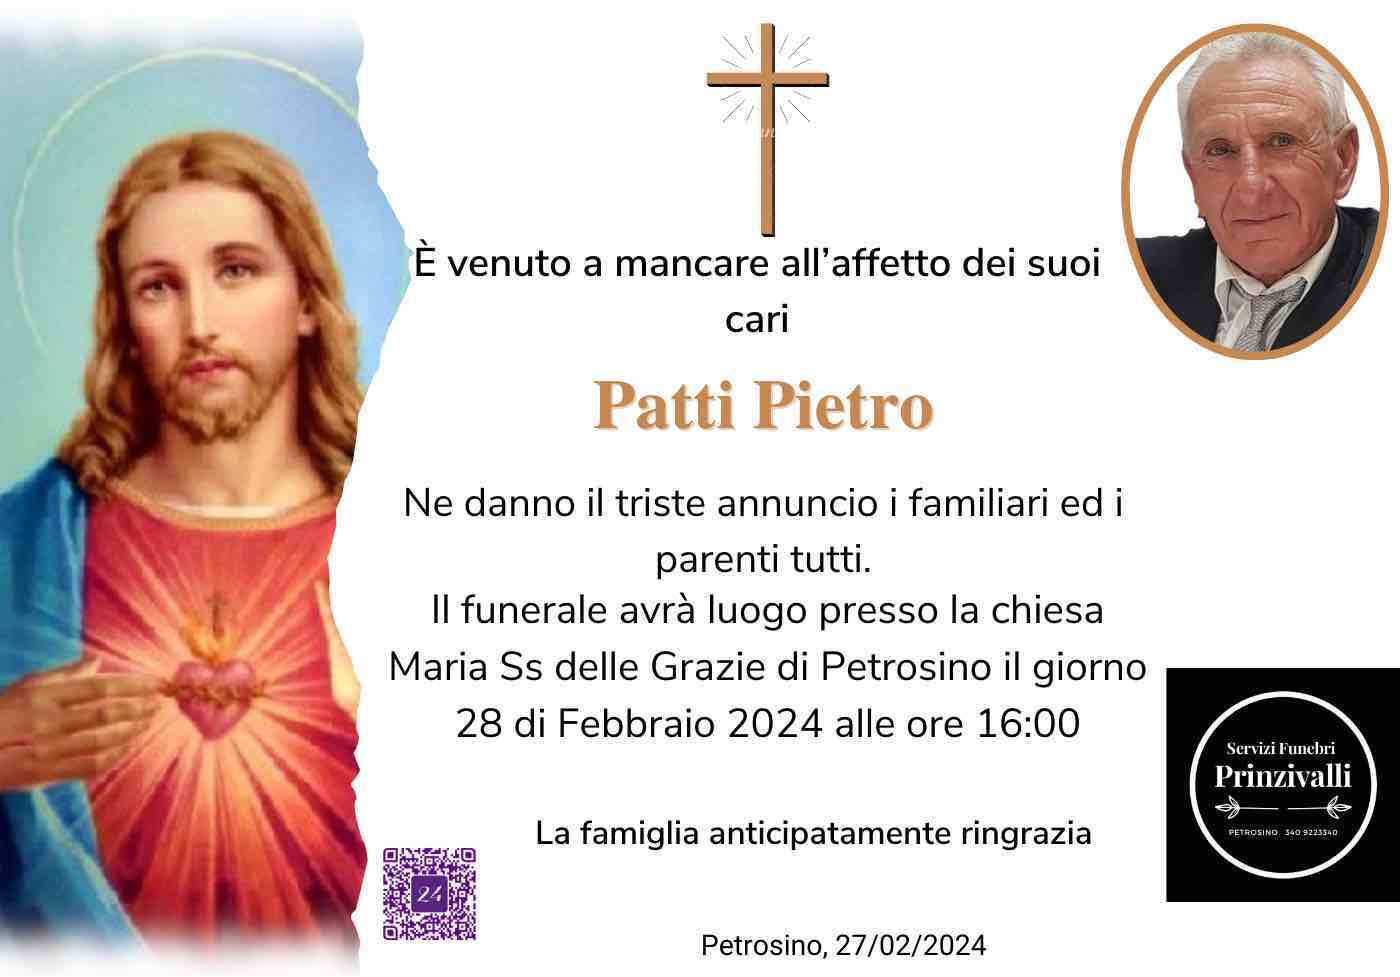 Pietro Patti